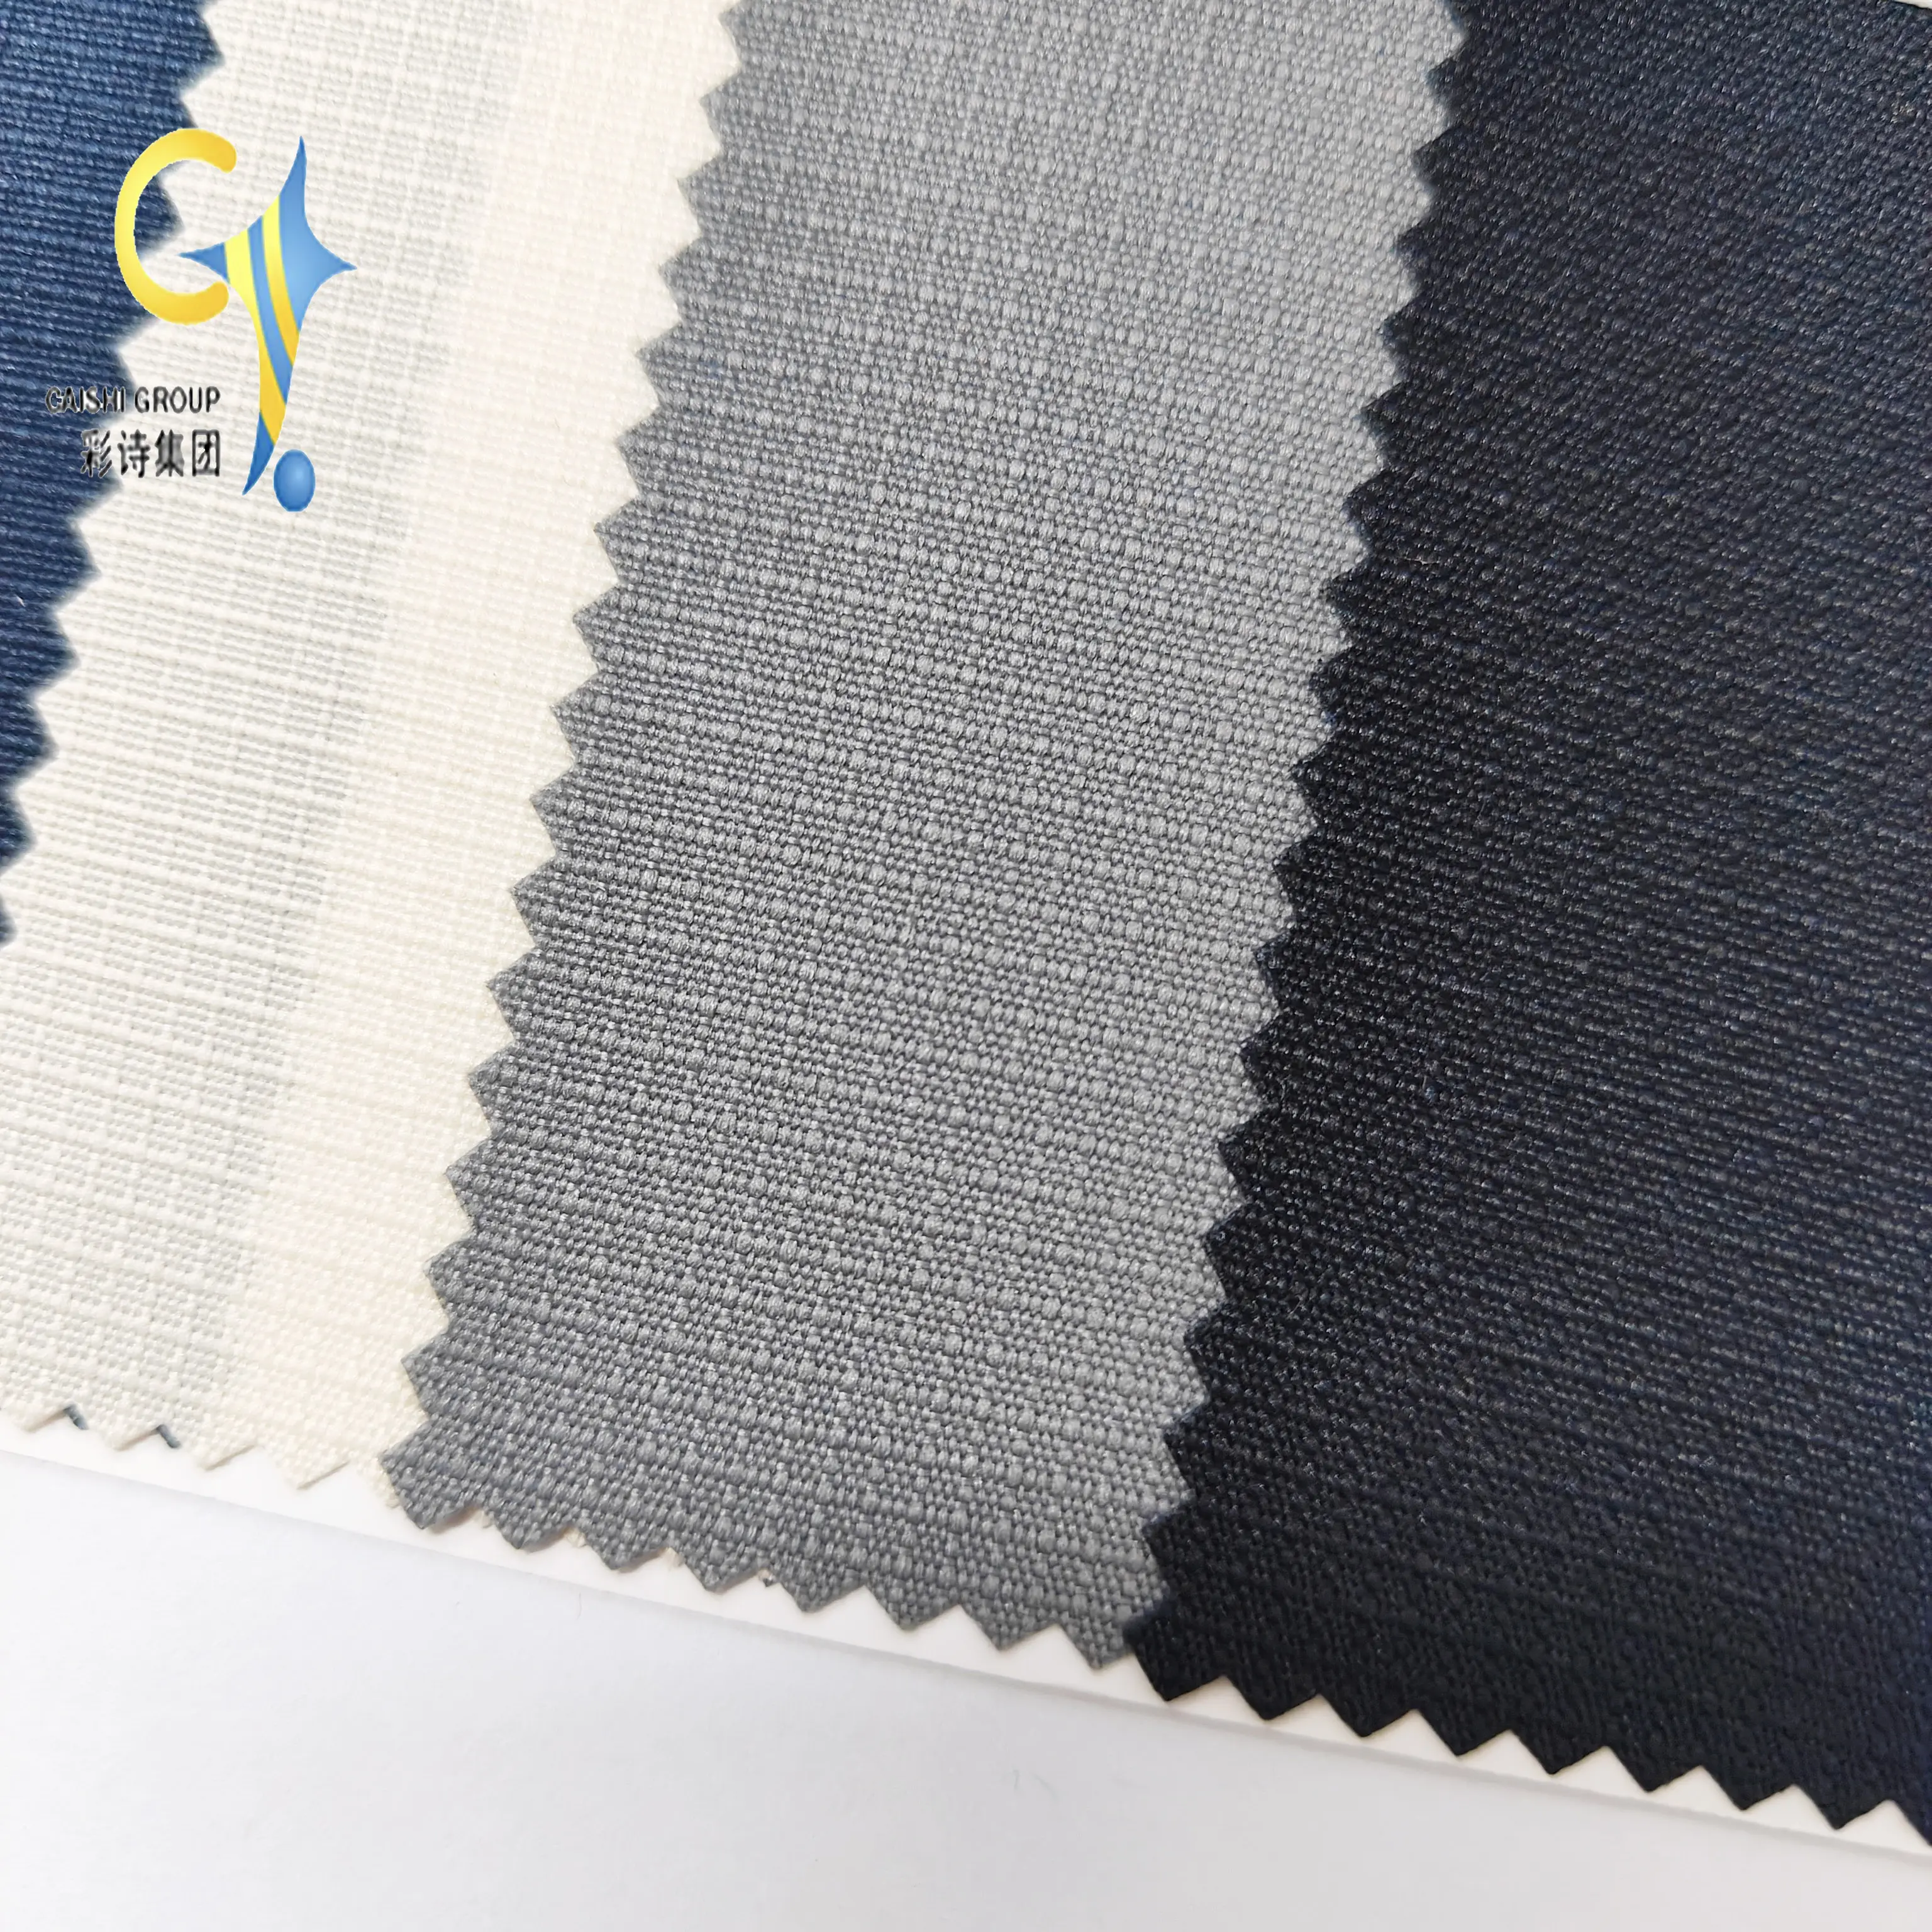 Mode Rpet tissu 100% polyester ZY-065 150D ribstop RIP avec PU enduit pour sac bagage extérieur oxford tissu